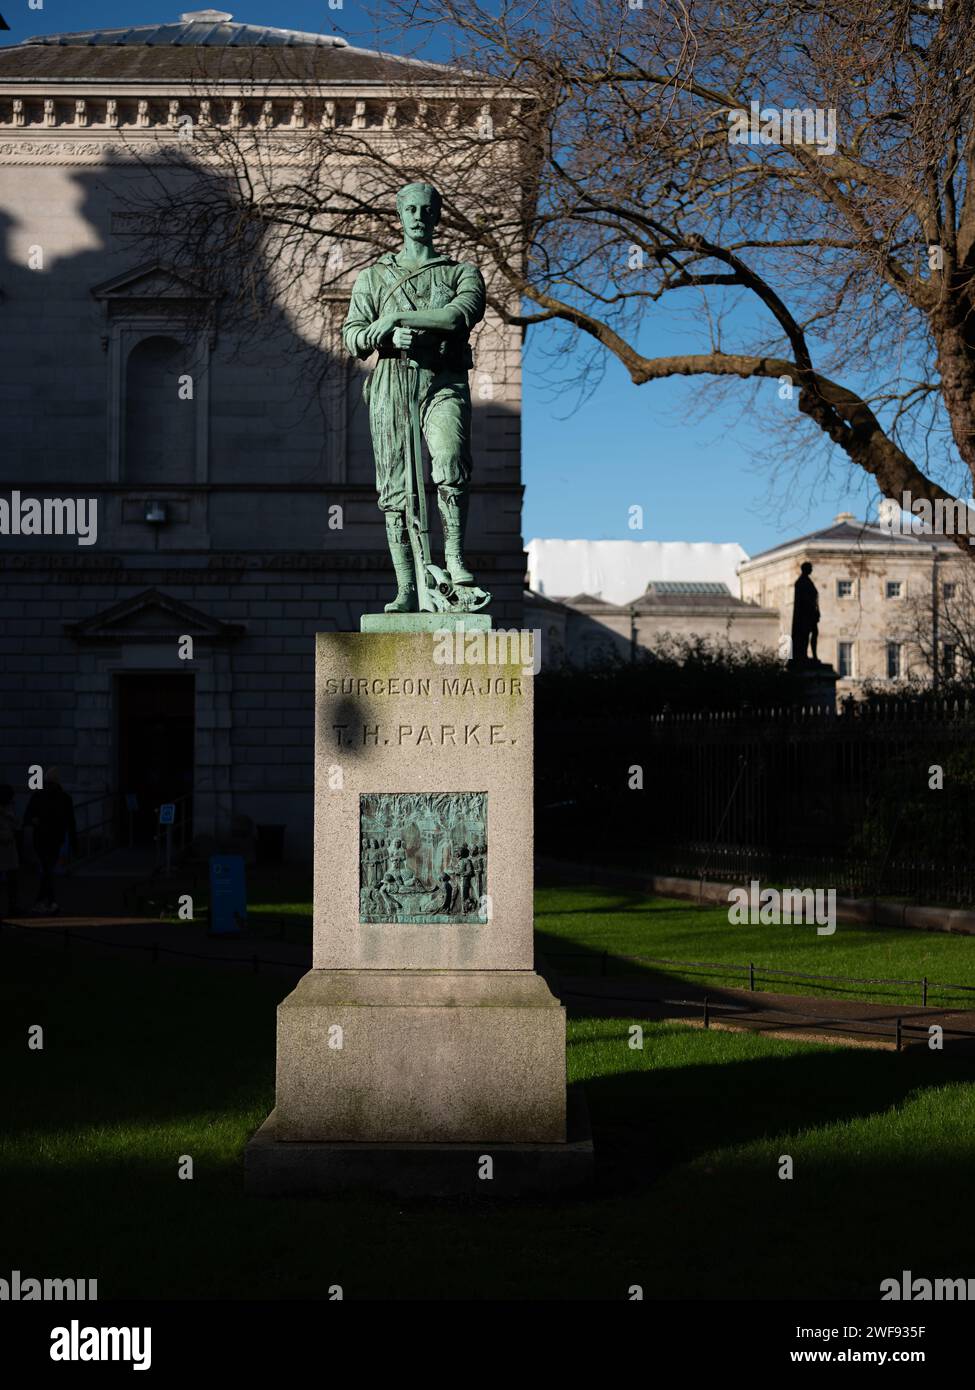 Bronzestatue des Chirurgen General Thomas Heazle Parke steht vor dem Natural History Museum in der Merrion Street in Dublin, Irland. Stockfoto